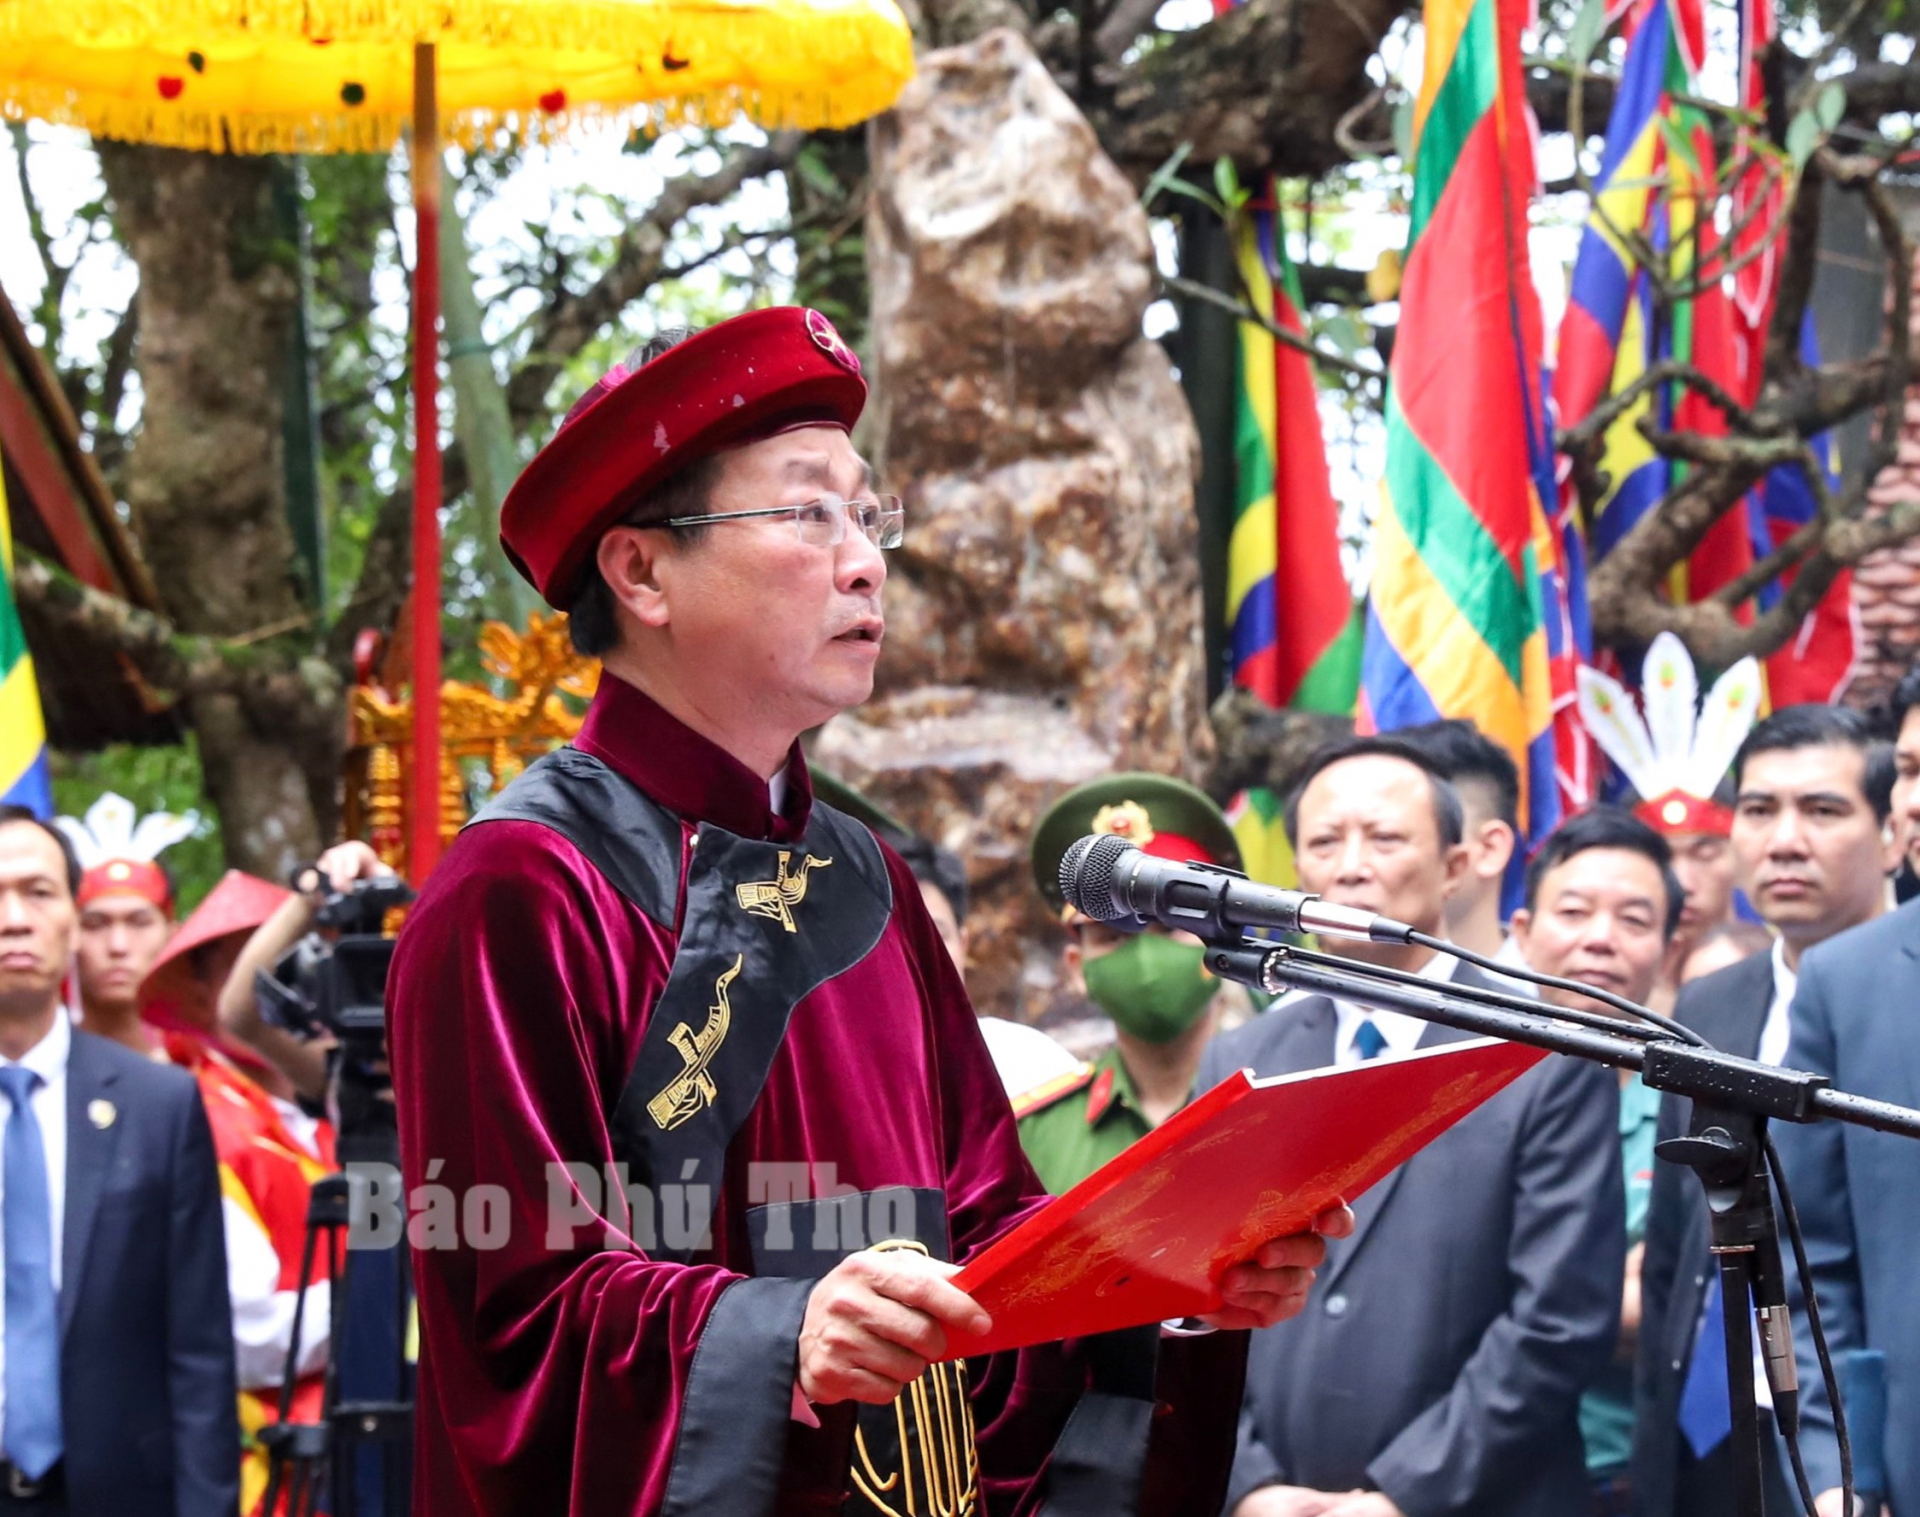 Đồng chí Bùi Văn Quang - Phó Bí thư Tỉnh ủy, Chủ tịch UBND tỉnh Phú Thọ kính cẩn đọc Chúc văn tưởng niệm các Vua Hùng